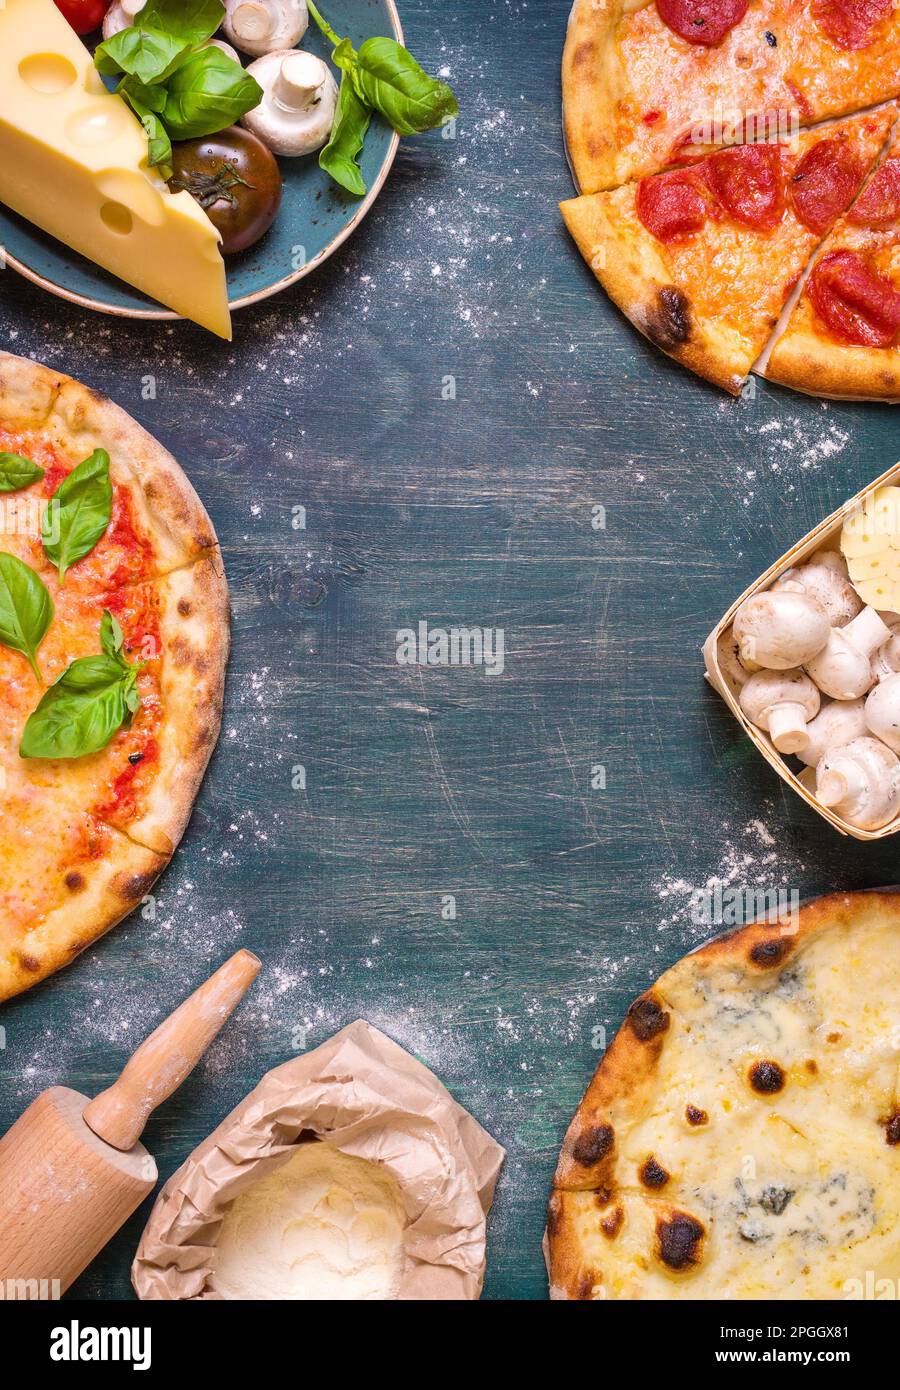 Pizza mit verschiedenen Belägen und Zutaten. Platz für Text. Pizza, Mehl, Käse, Tomaten, Basilikum, Peperoni, Pilze und Walznadel Stockfoto